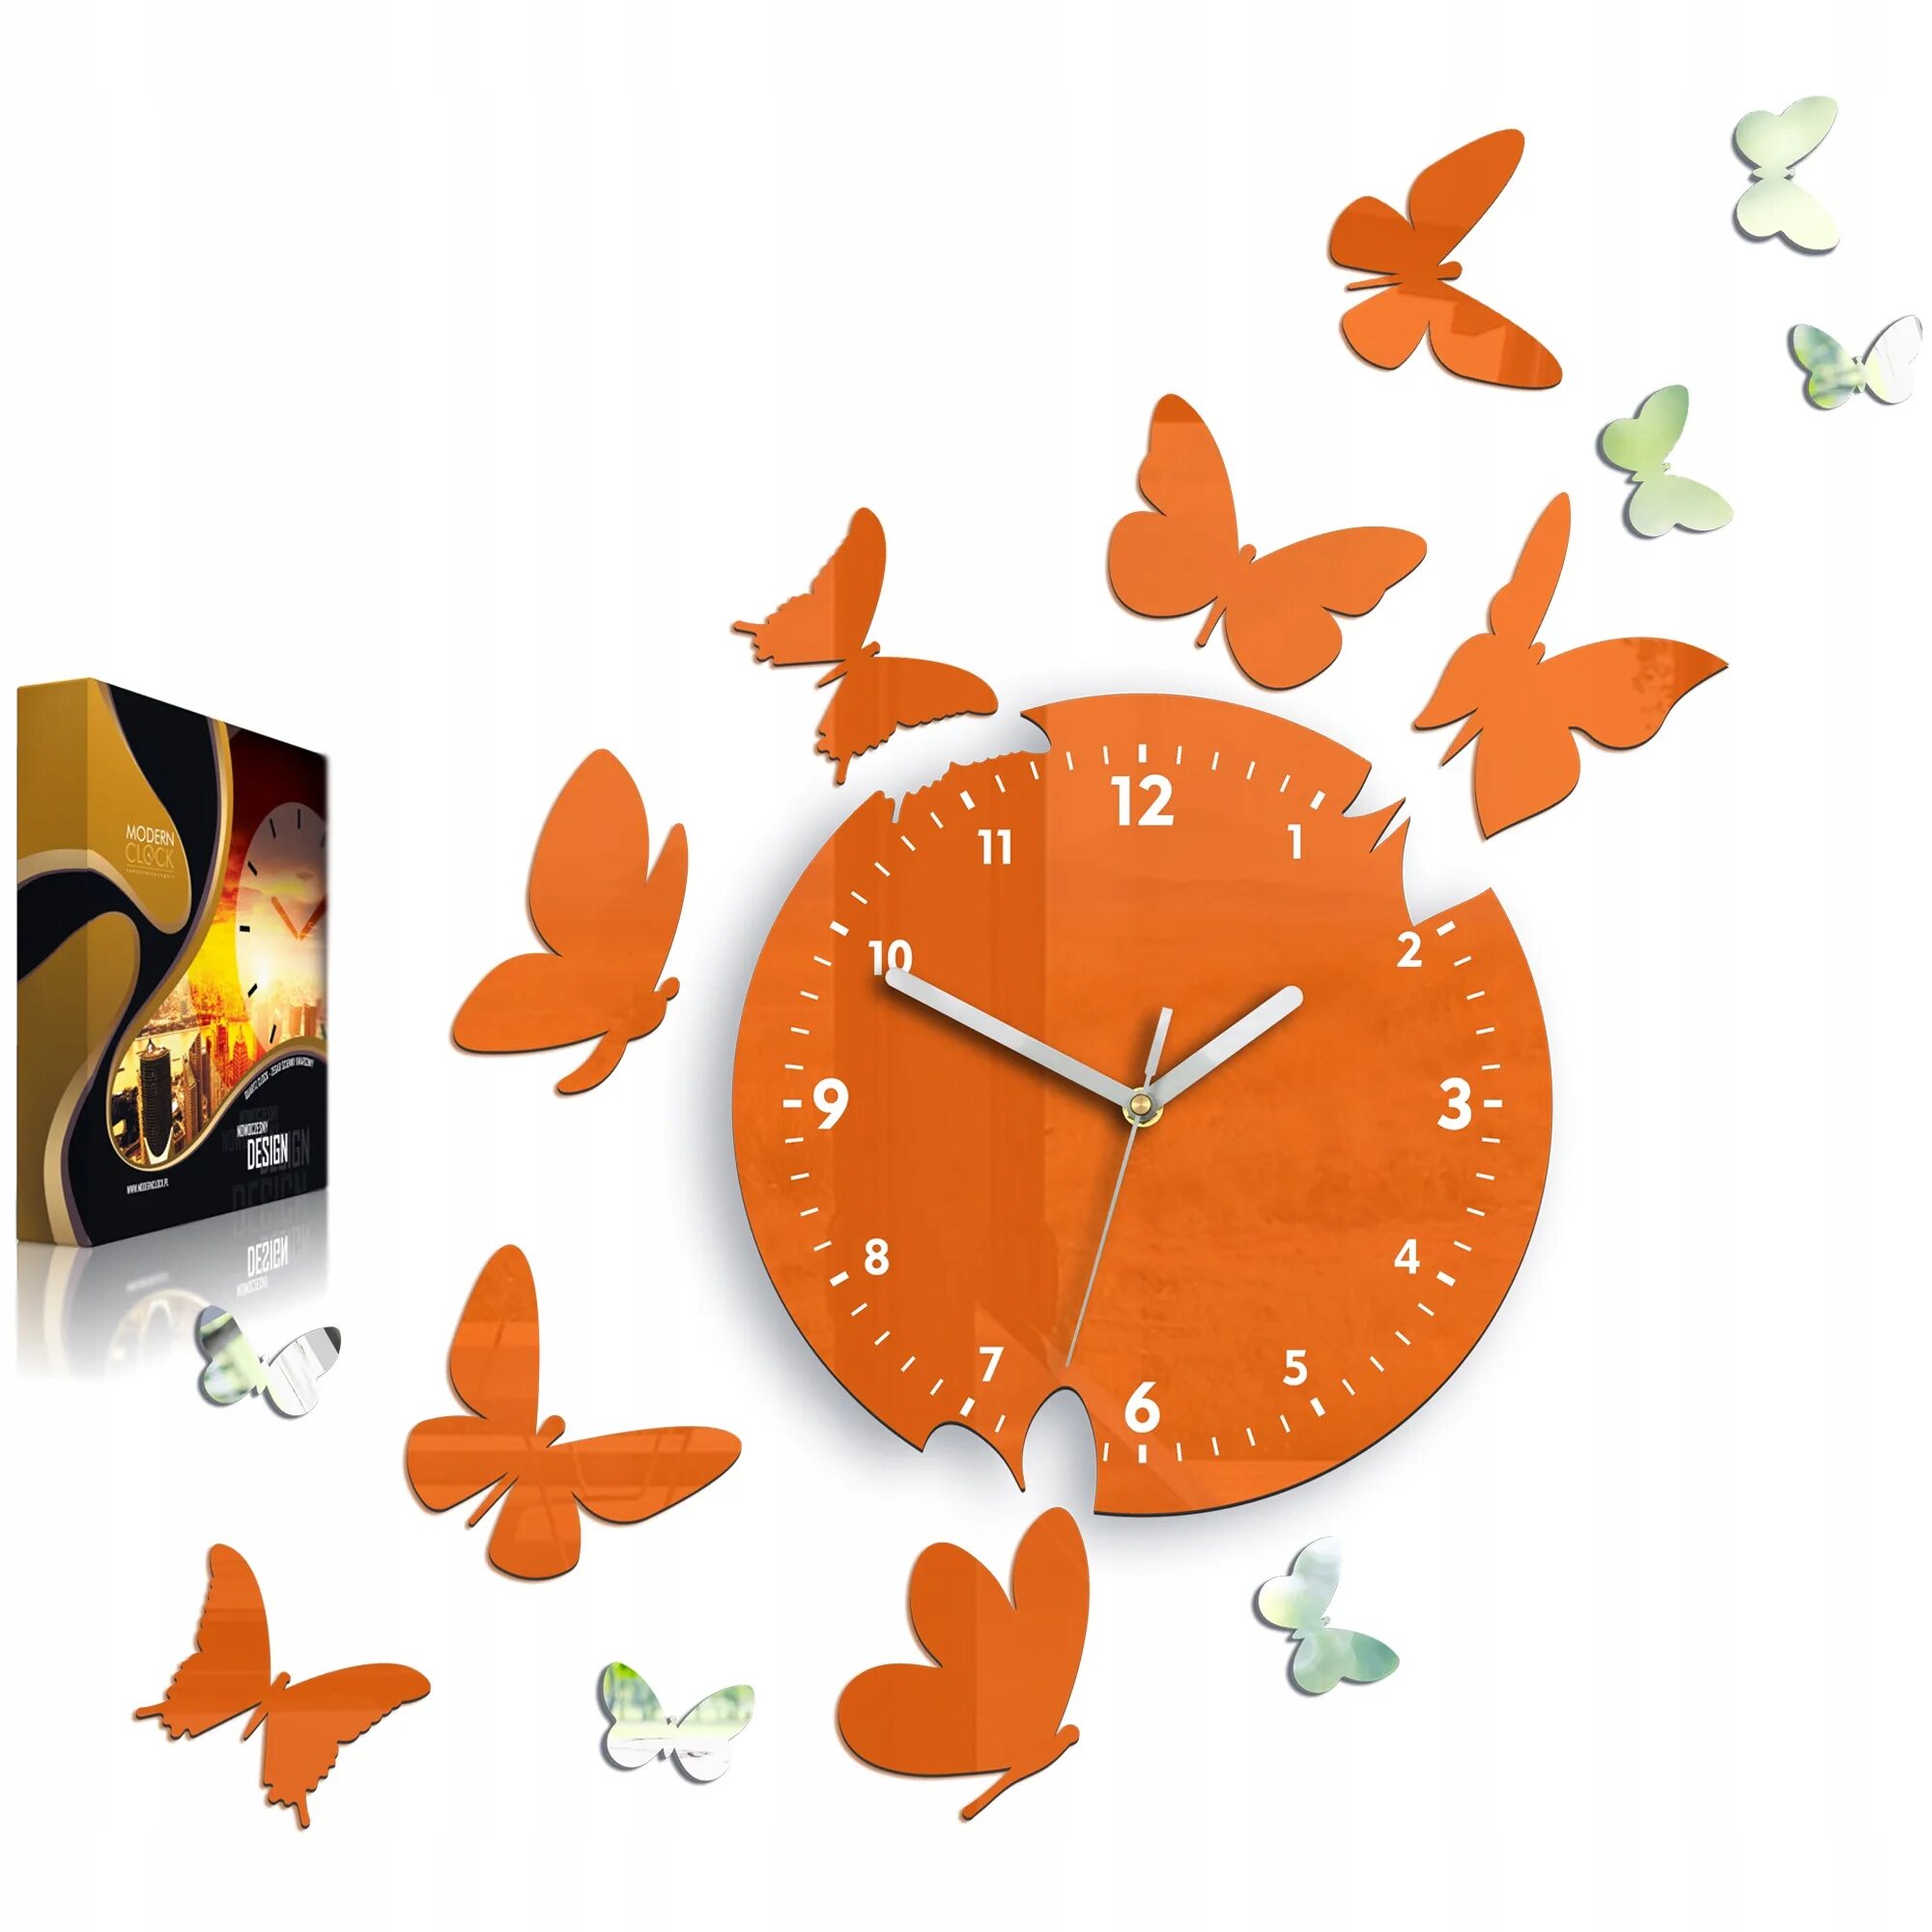 Часы 14 см. Часы настенные, оранжевые. Часы настенные с бабочками. Настенные часы оранжевые бабочки. Оранжевые часы на стену.